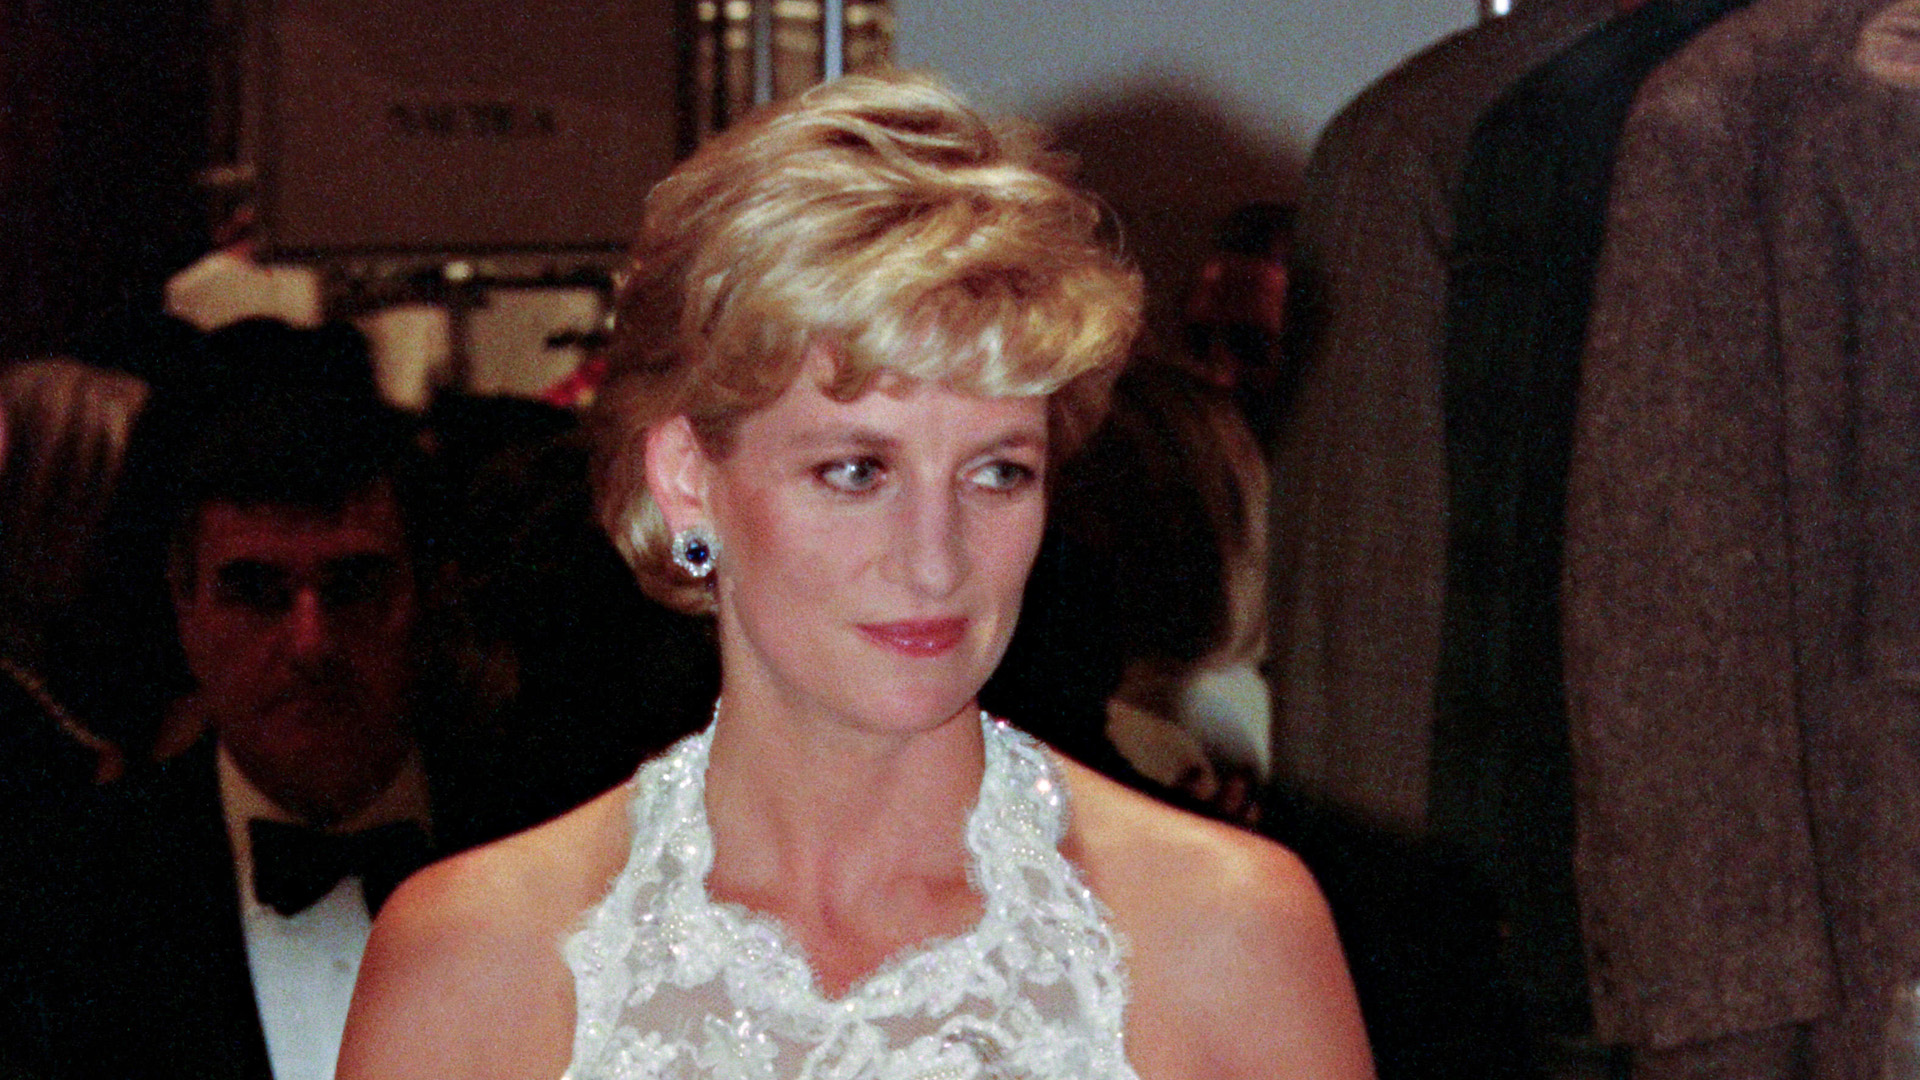 The 5 Times Princess Diana's Fashion Sense Caused a Royal Scandal